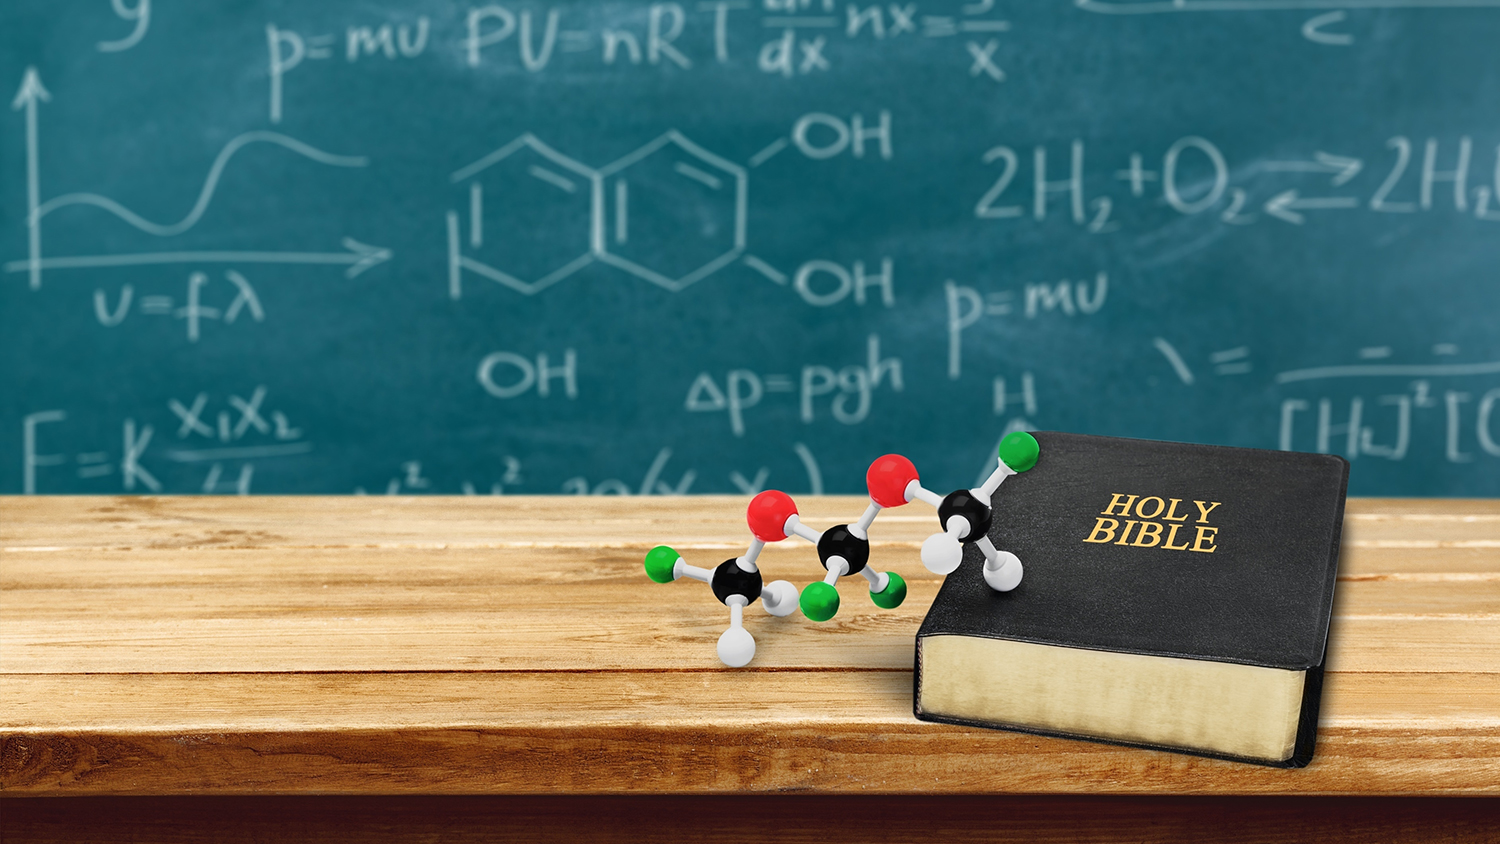 Science vs religion